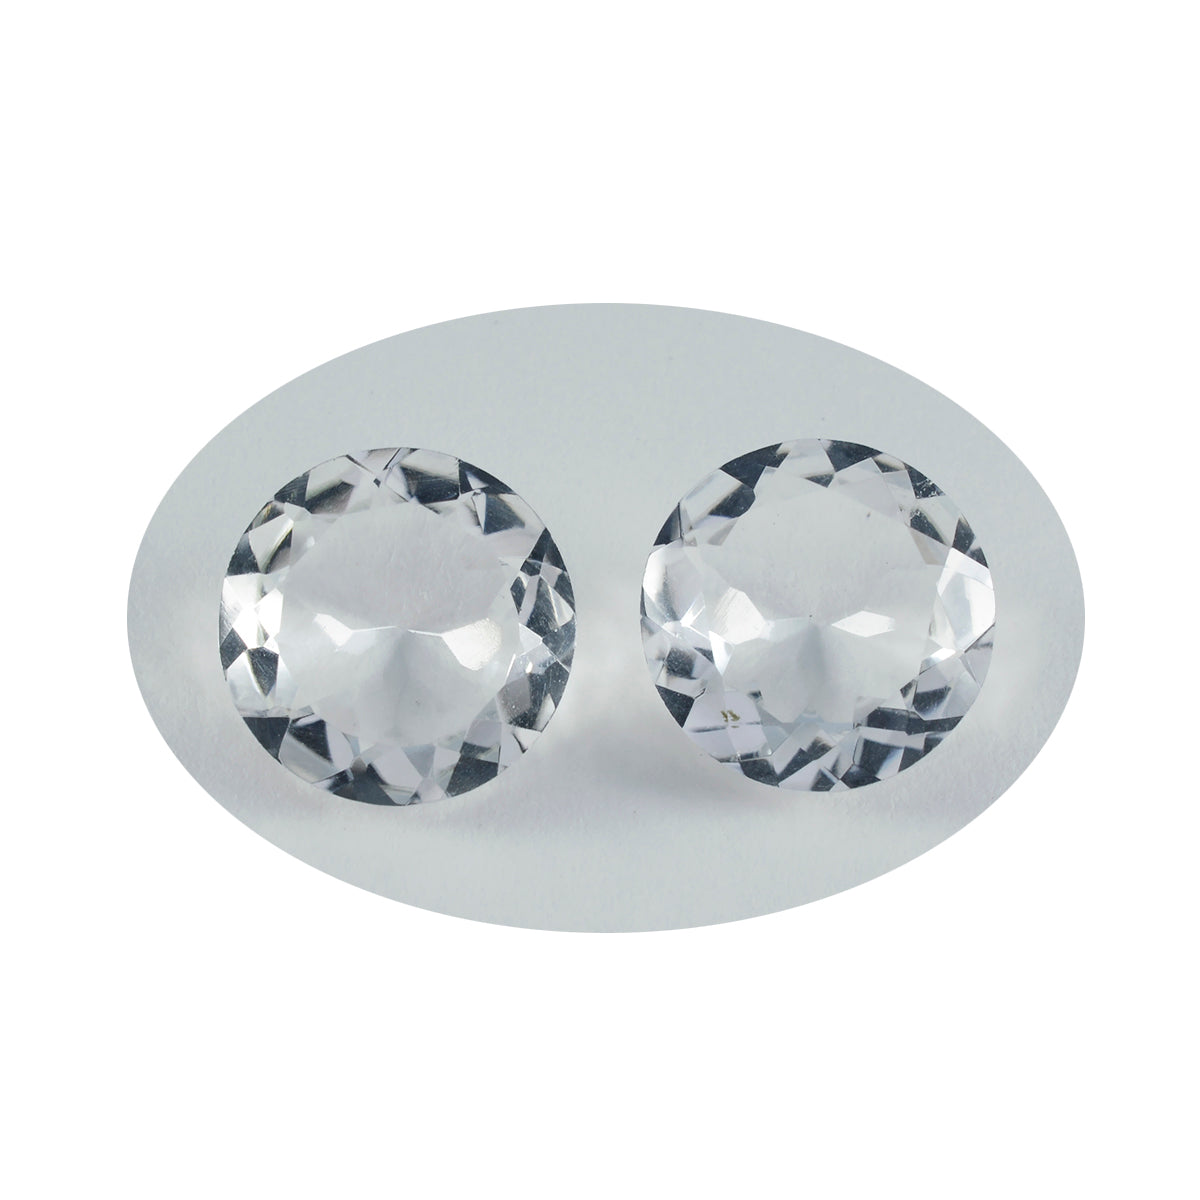 riyogems 1шт белый кристалл кварца ограненный 15x15 мм круглая форма красивый качественный драгоценный камень